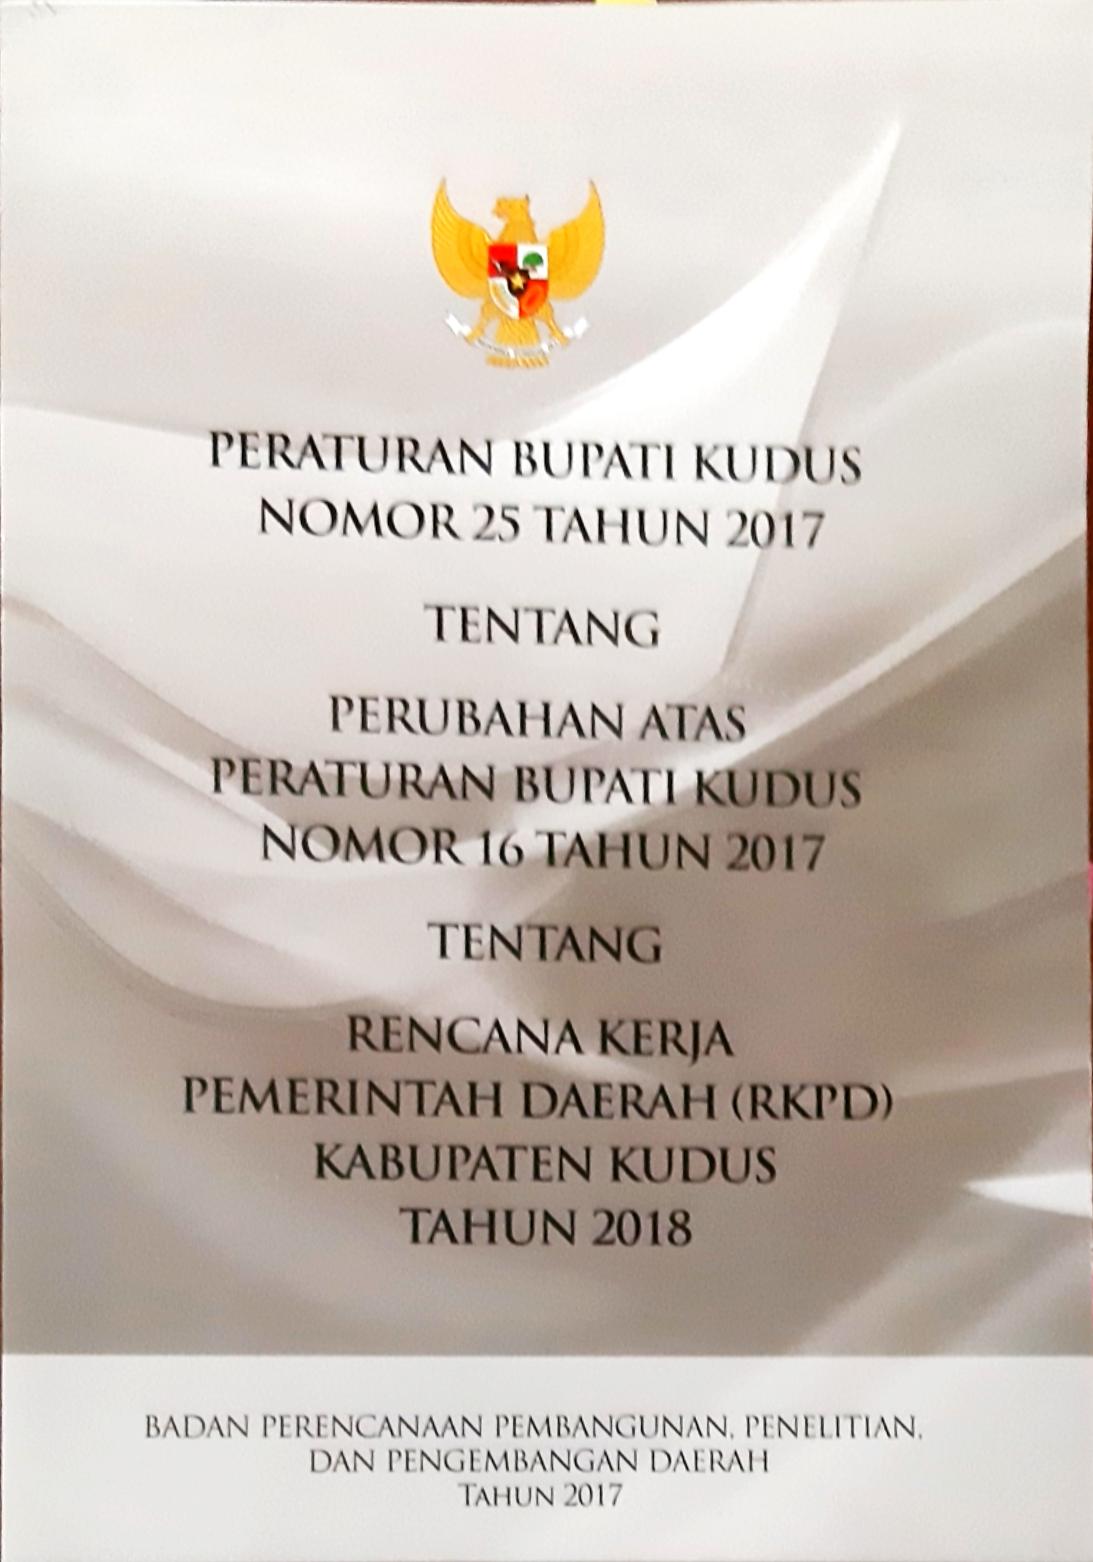 Peraturan Bupati Kudus Nomor 25 Tahun 2017 tentang perubahan atas peraturan bupati kudus nomor 16 tahun 2017 tentang rencana kerja pemerintah daerah (RKPD) Kab. Kudus Tanun 2018